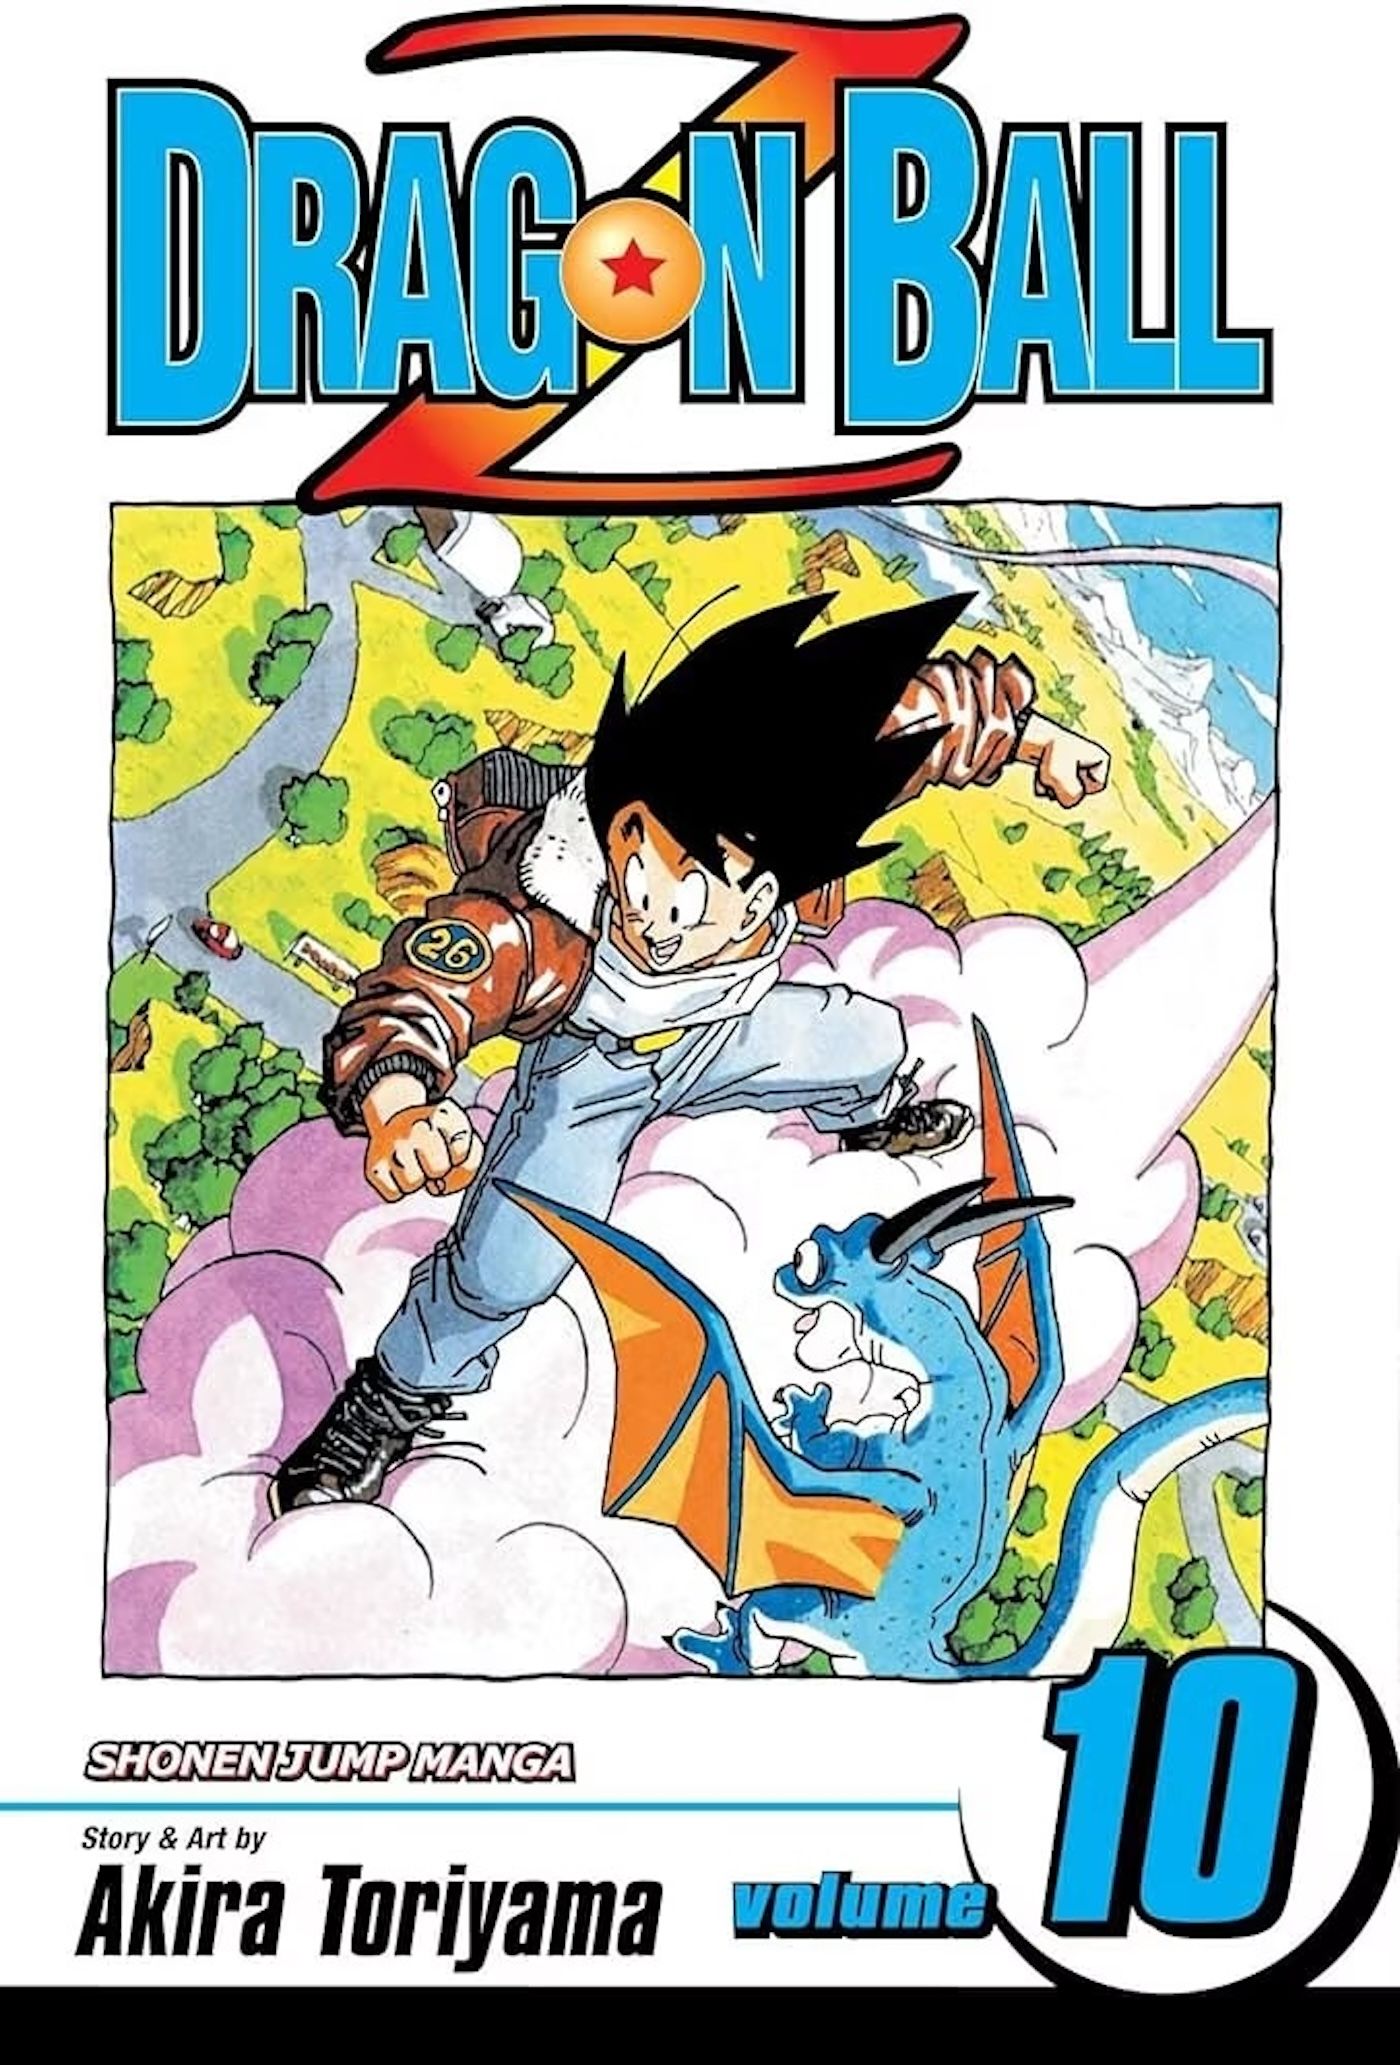 Capa do volume 10 de Dragon Ball Z: Goku voa sobre uma paisagem campestre.